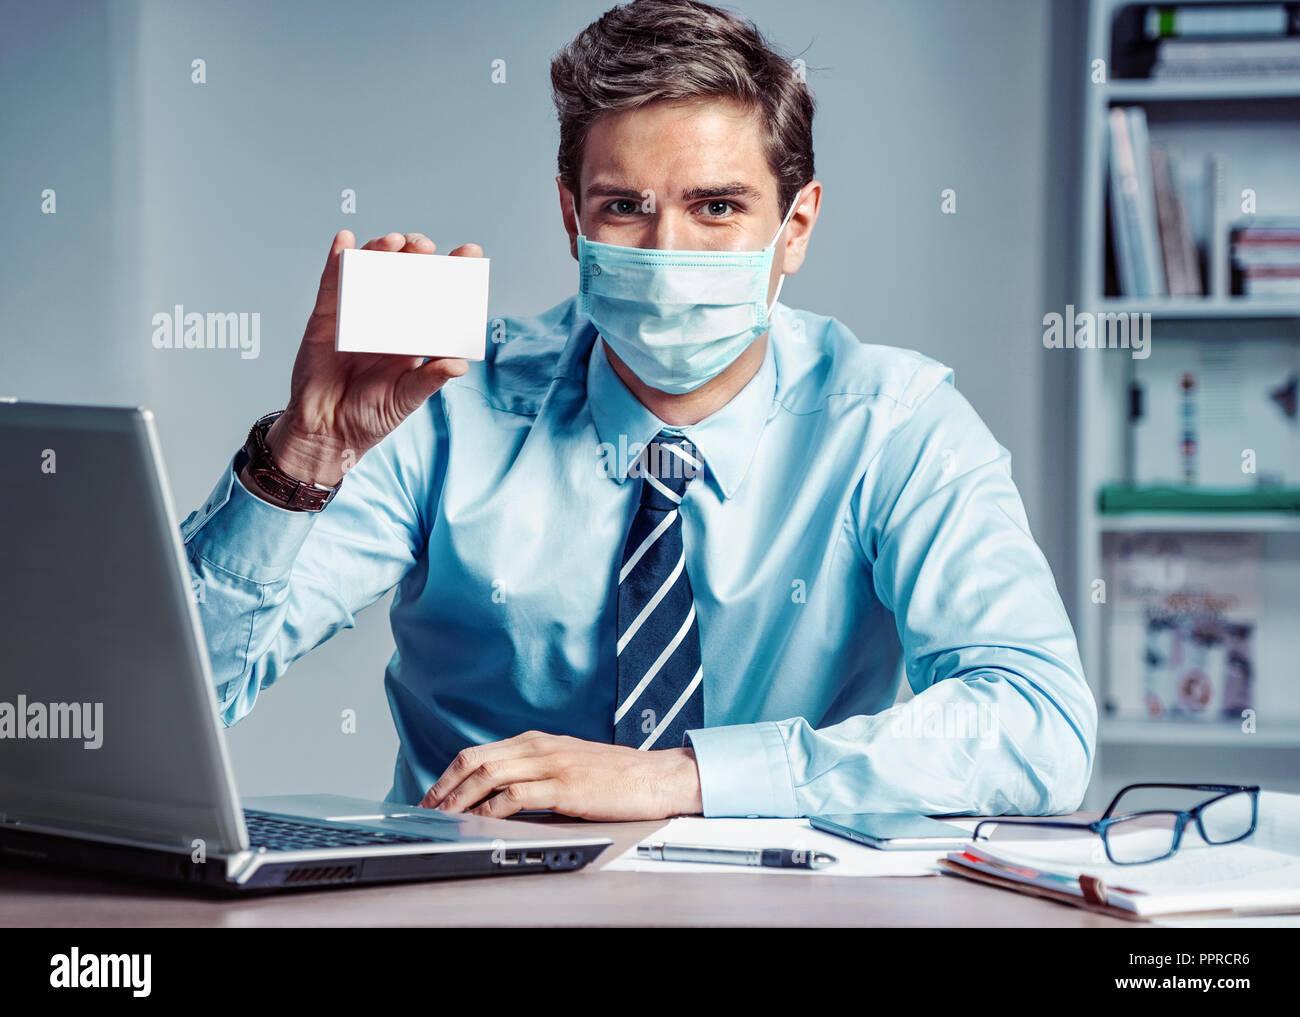 Lavoratore sano in ufficio azienda casella bianca della medicina. Foto di un uomo che indossa la maschera di protezione contro le malattie infettive e l'influenza. Business e hea Foto Stock